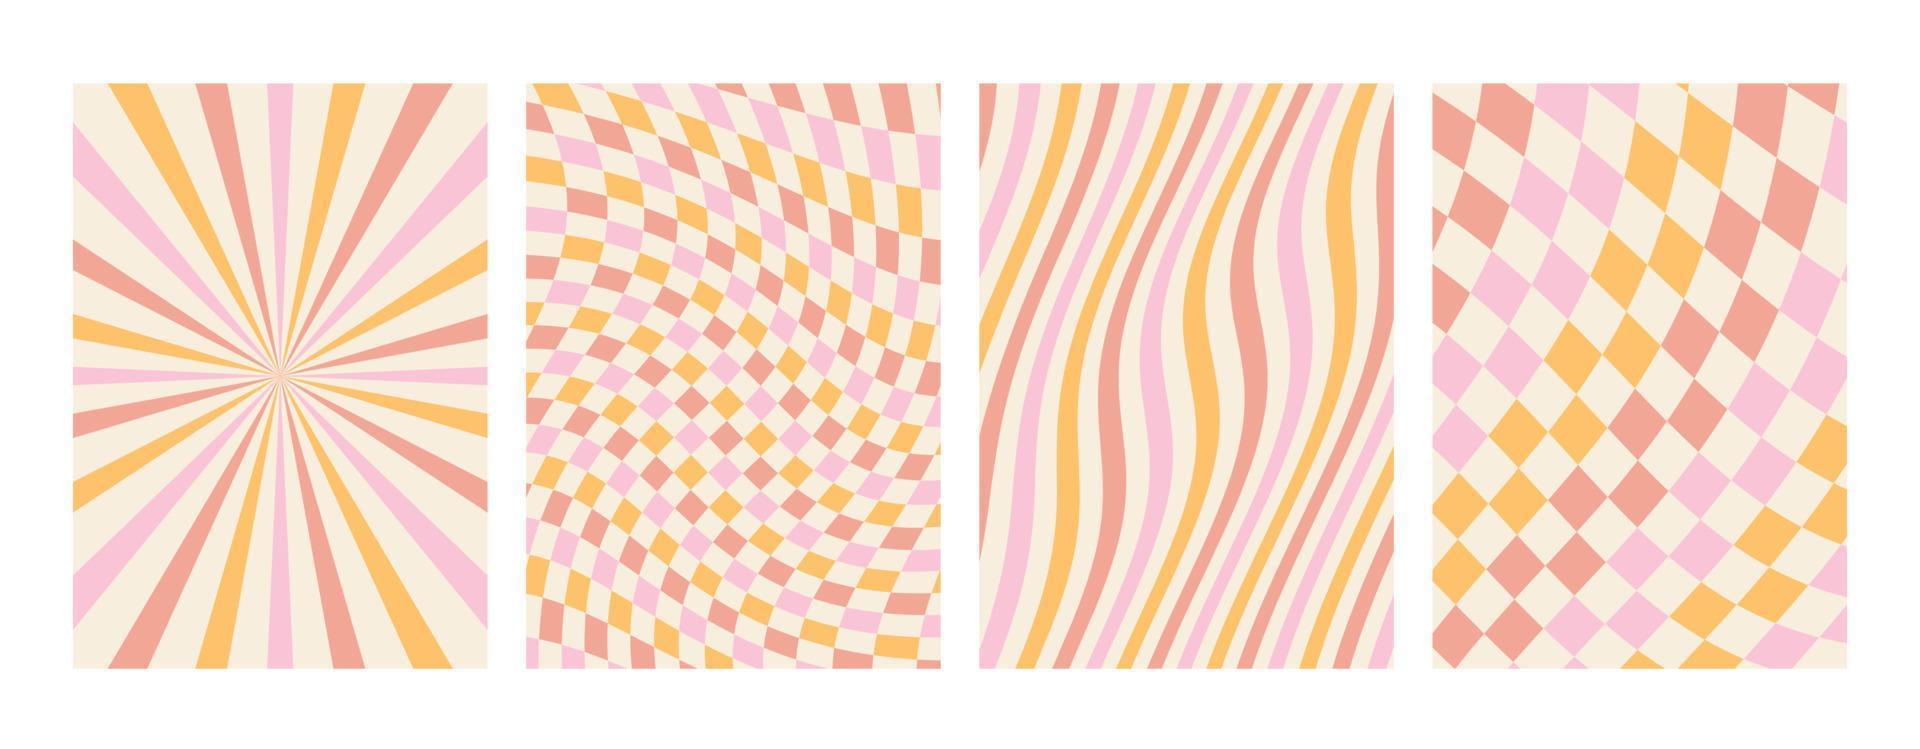 groovy regenboog pastel achtergronden. schaakbord, rooster, golven, wervelen, draaikolk patroon.. gedraaid en vervormd vector structuur in een modieus retro psychedelisch stijl. de esthetiek van de hippies van de jaren 70.